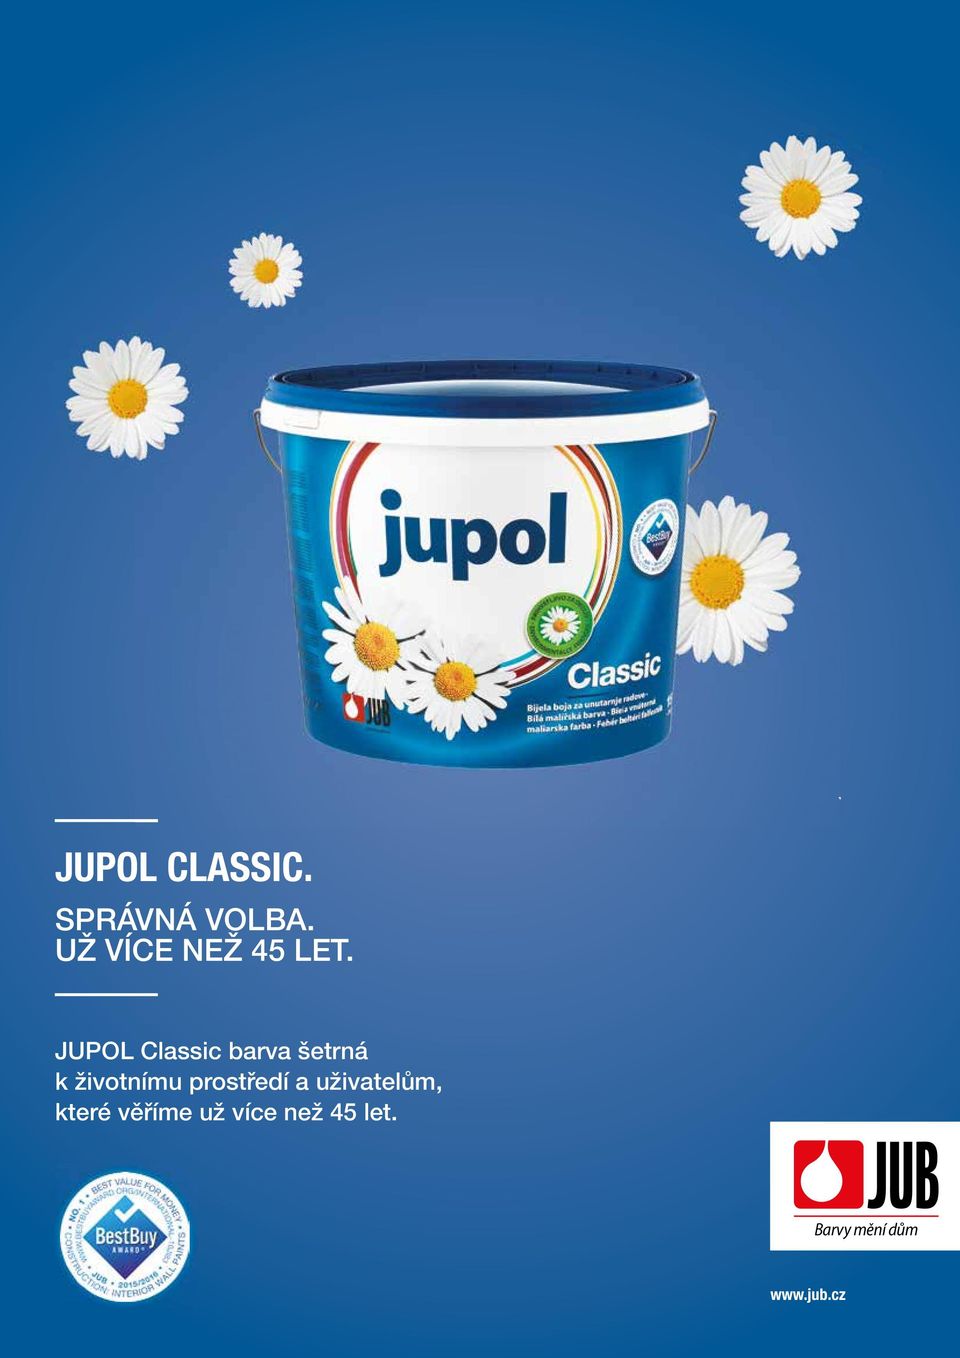 JUPOL Classic barva šetrná k životnímu